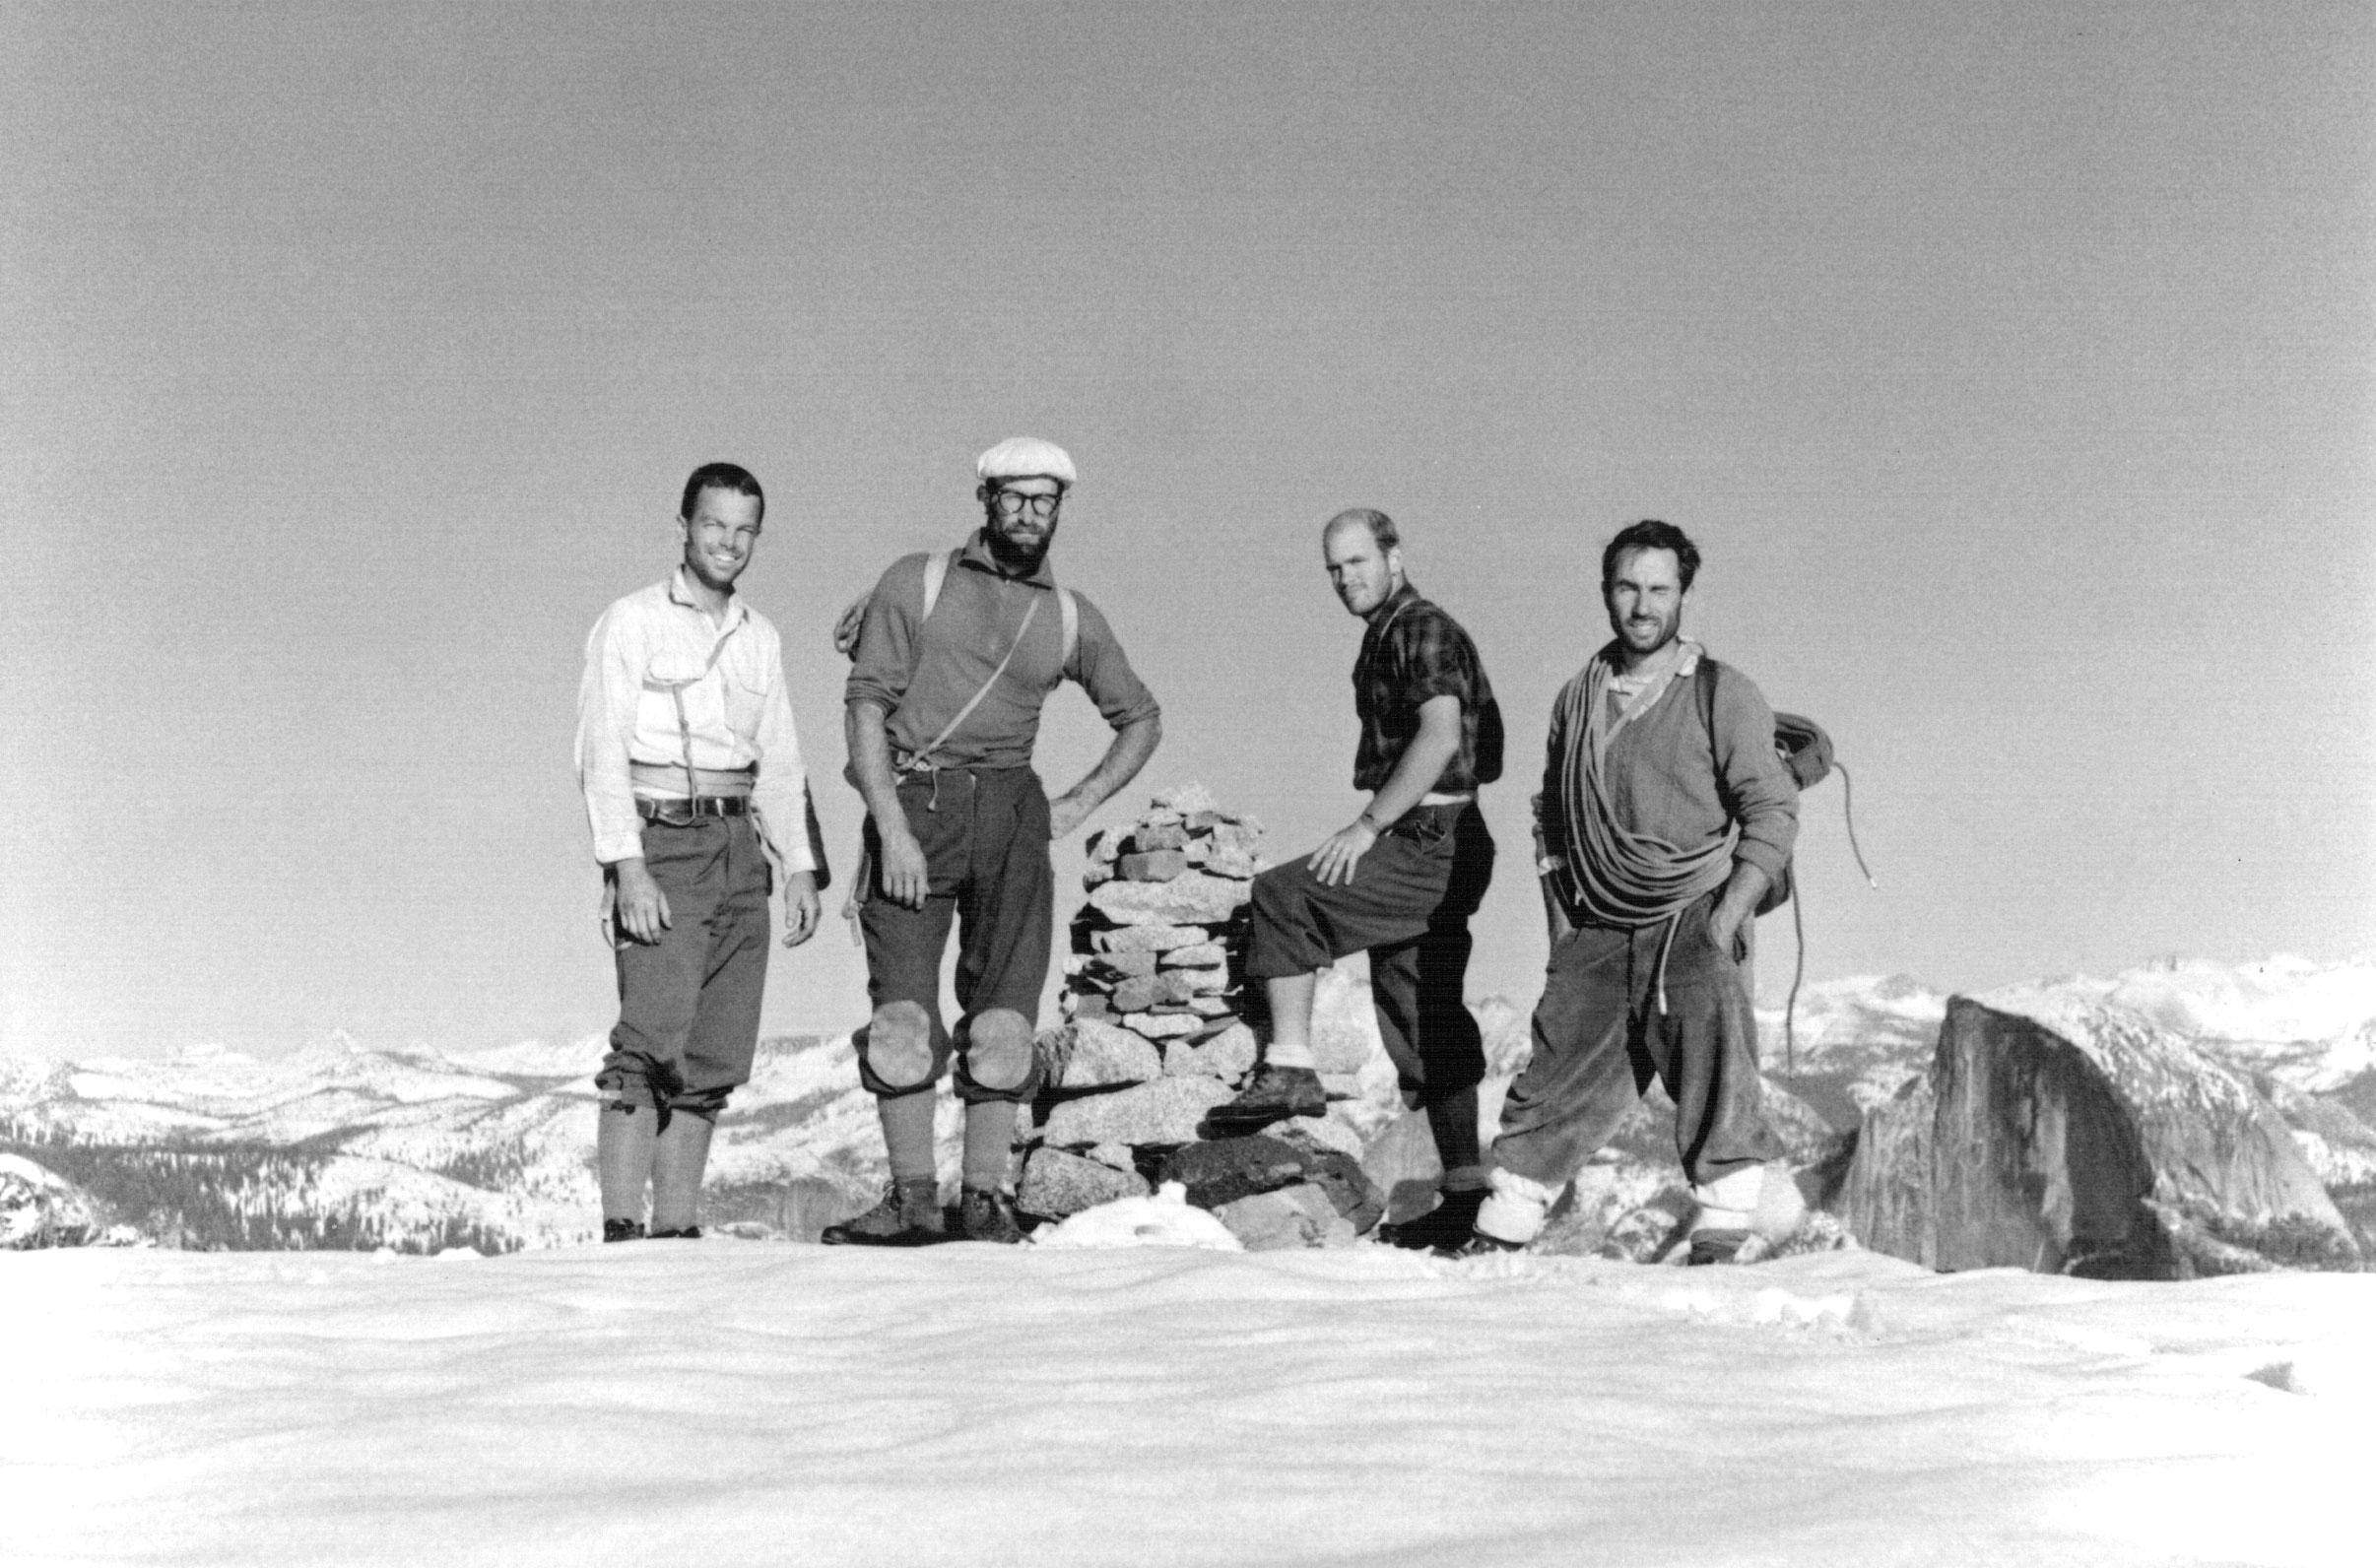 30 октября 1968 года на вершине Эль Капитан: Том Фрост (Tom Frost), Ройал Роббинс (Royal Robbins), Чак Пратт (Chuck Pratt), Ивон Шуинард (Yvon Chouinard)] после их 10-дневного восхождения на большую стену.